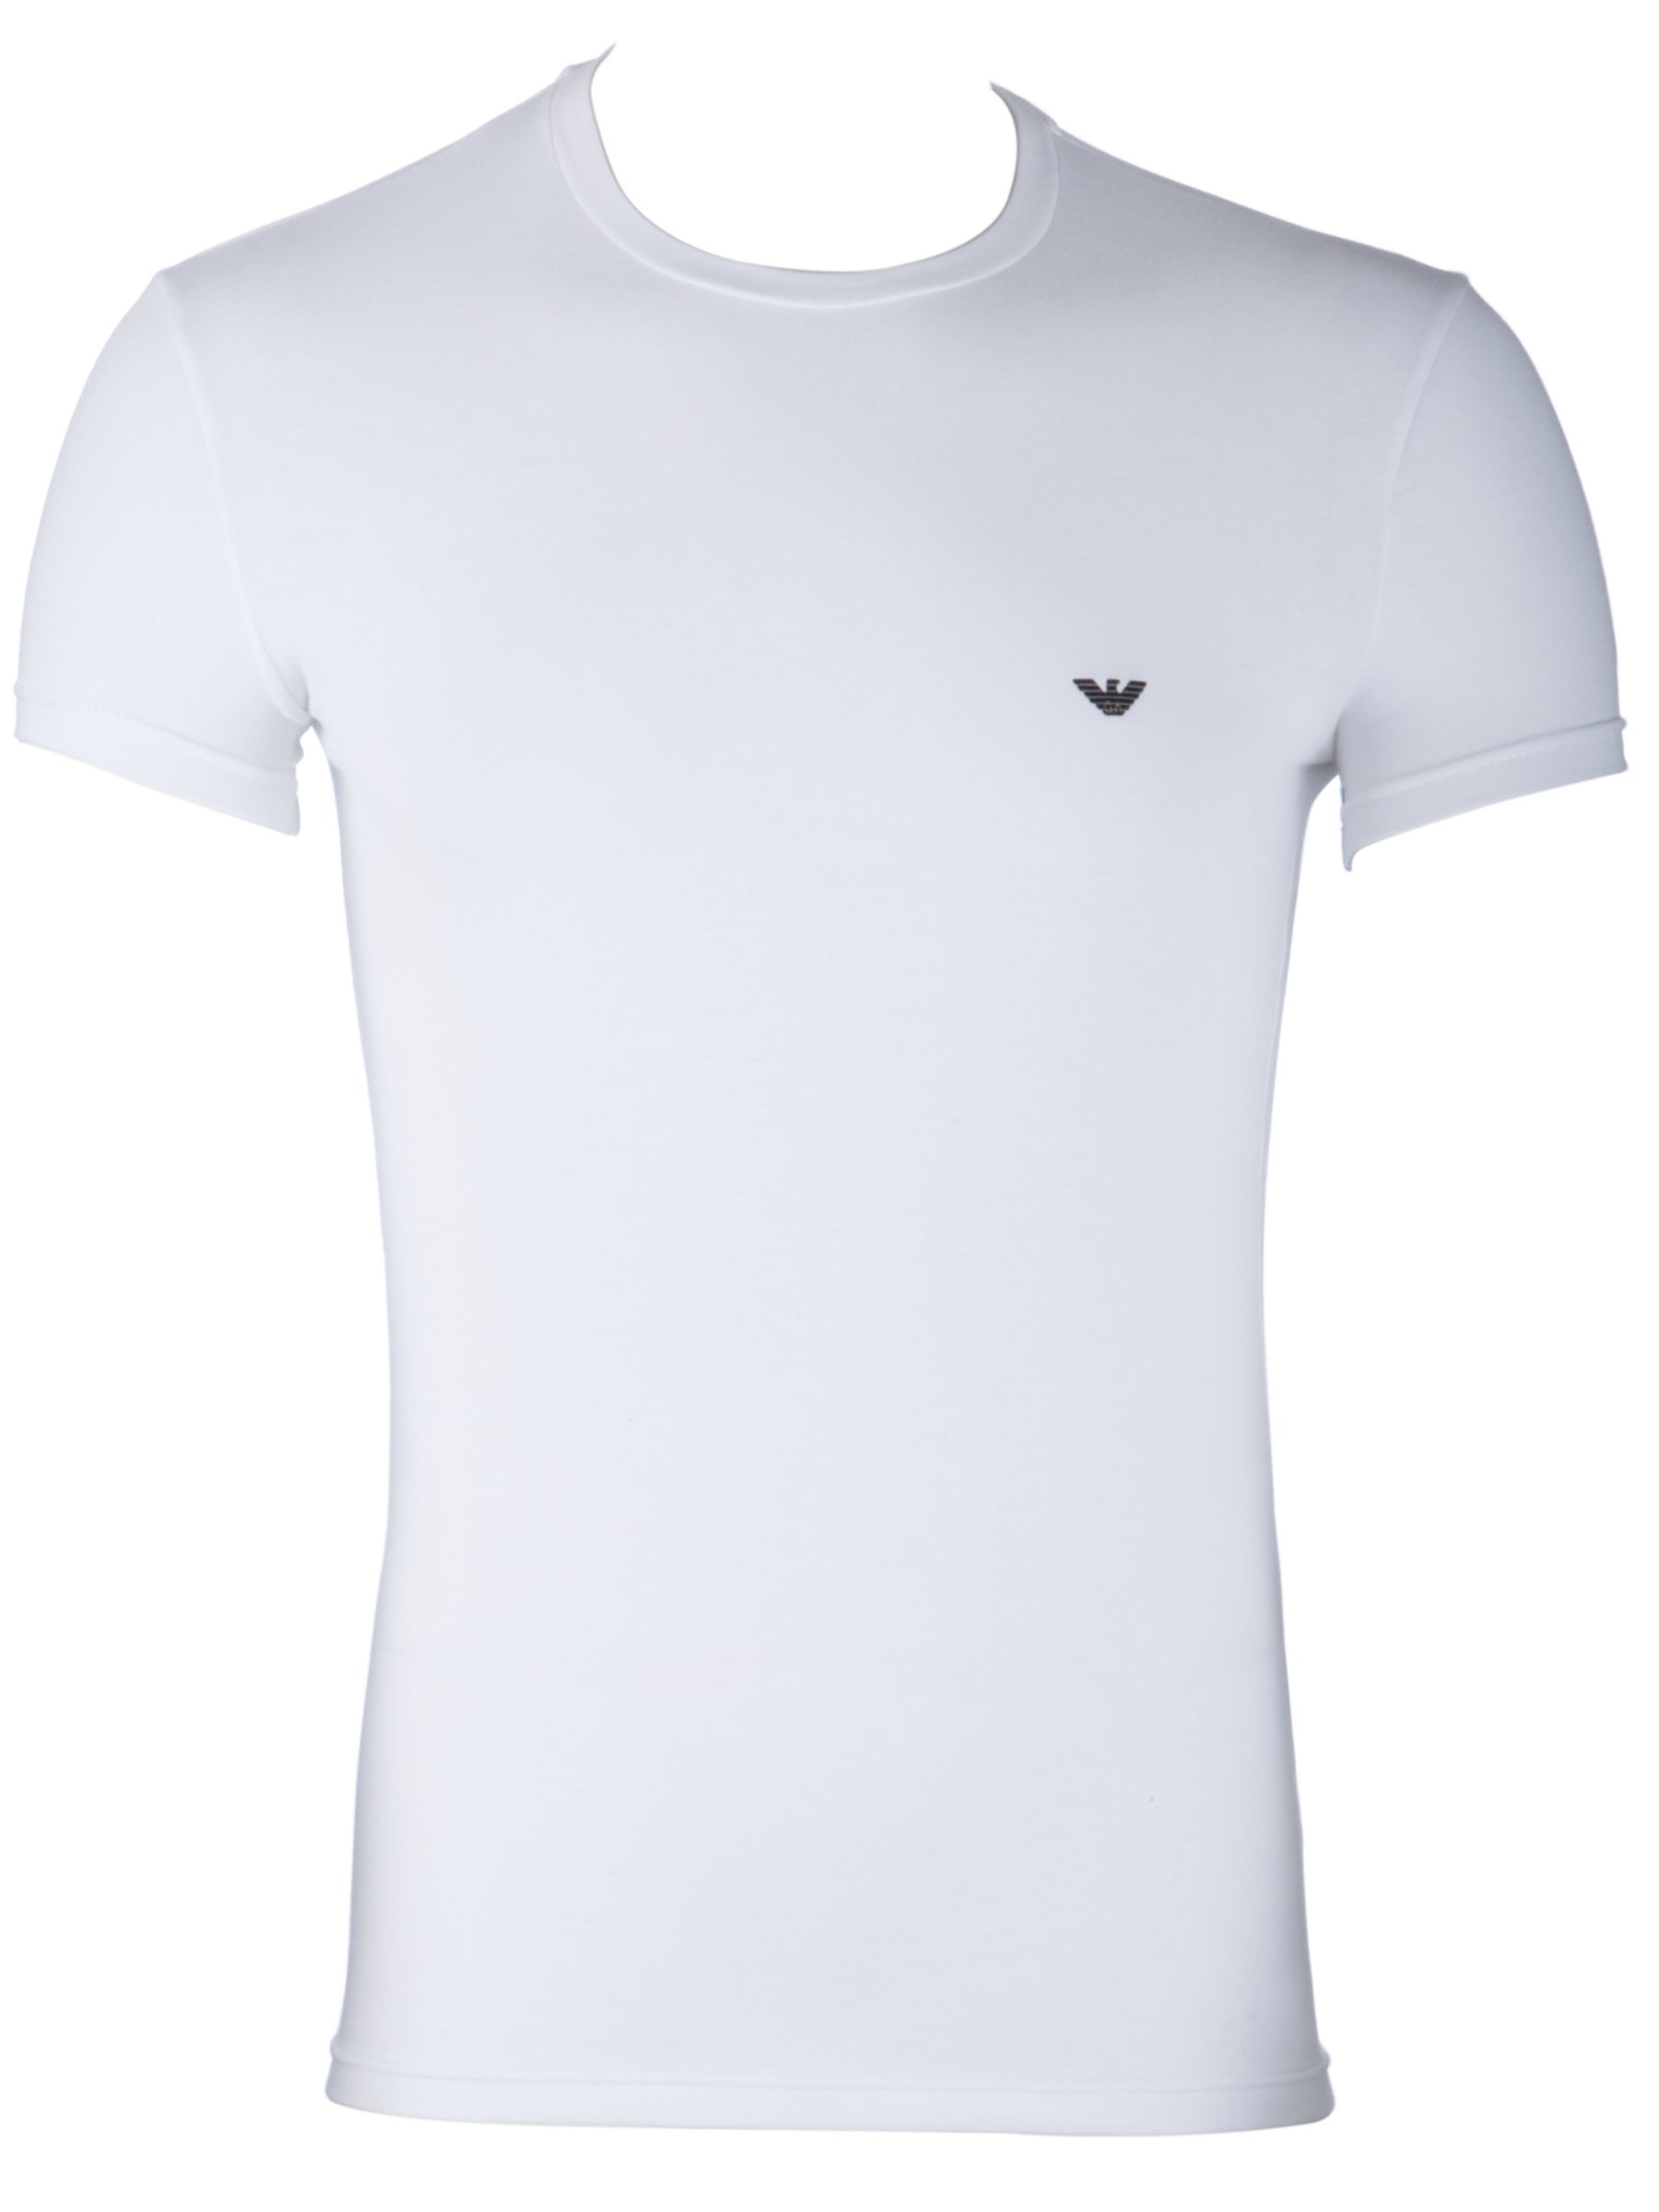 Emporio Armani Cotton White T-Shirt, White